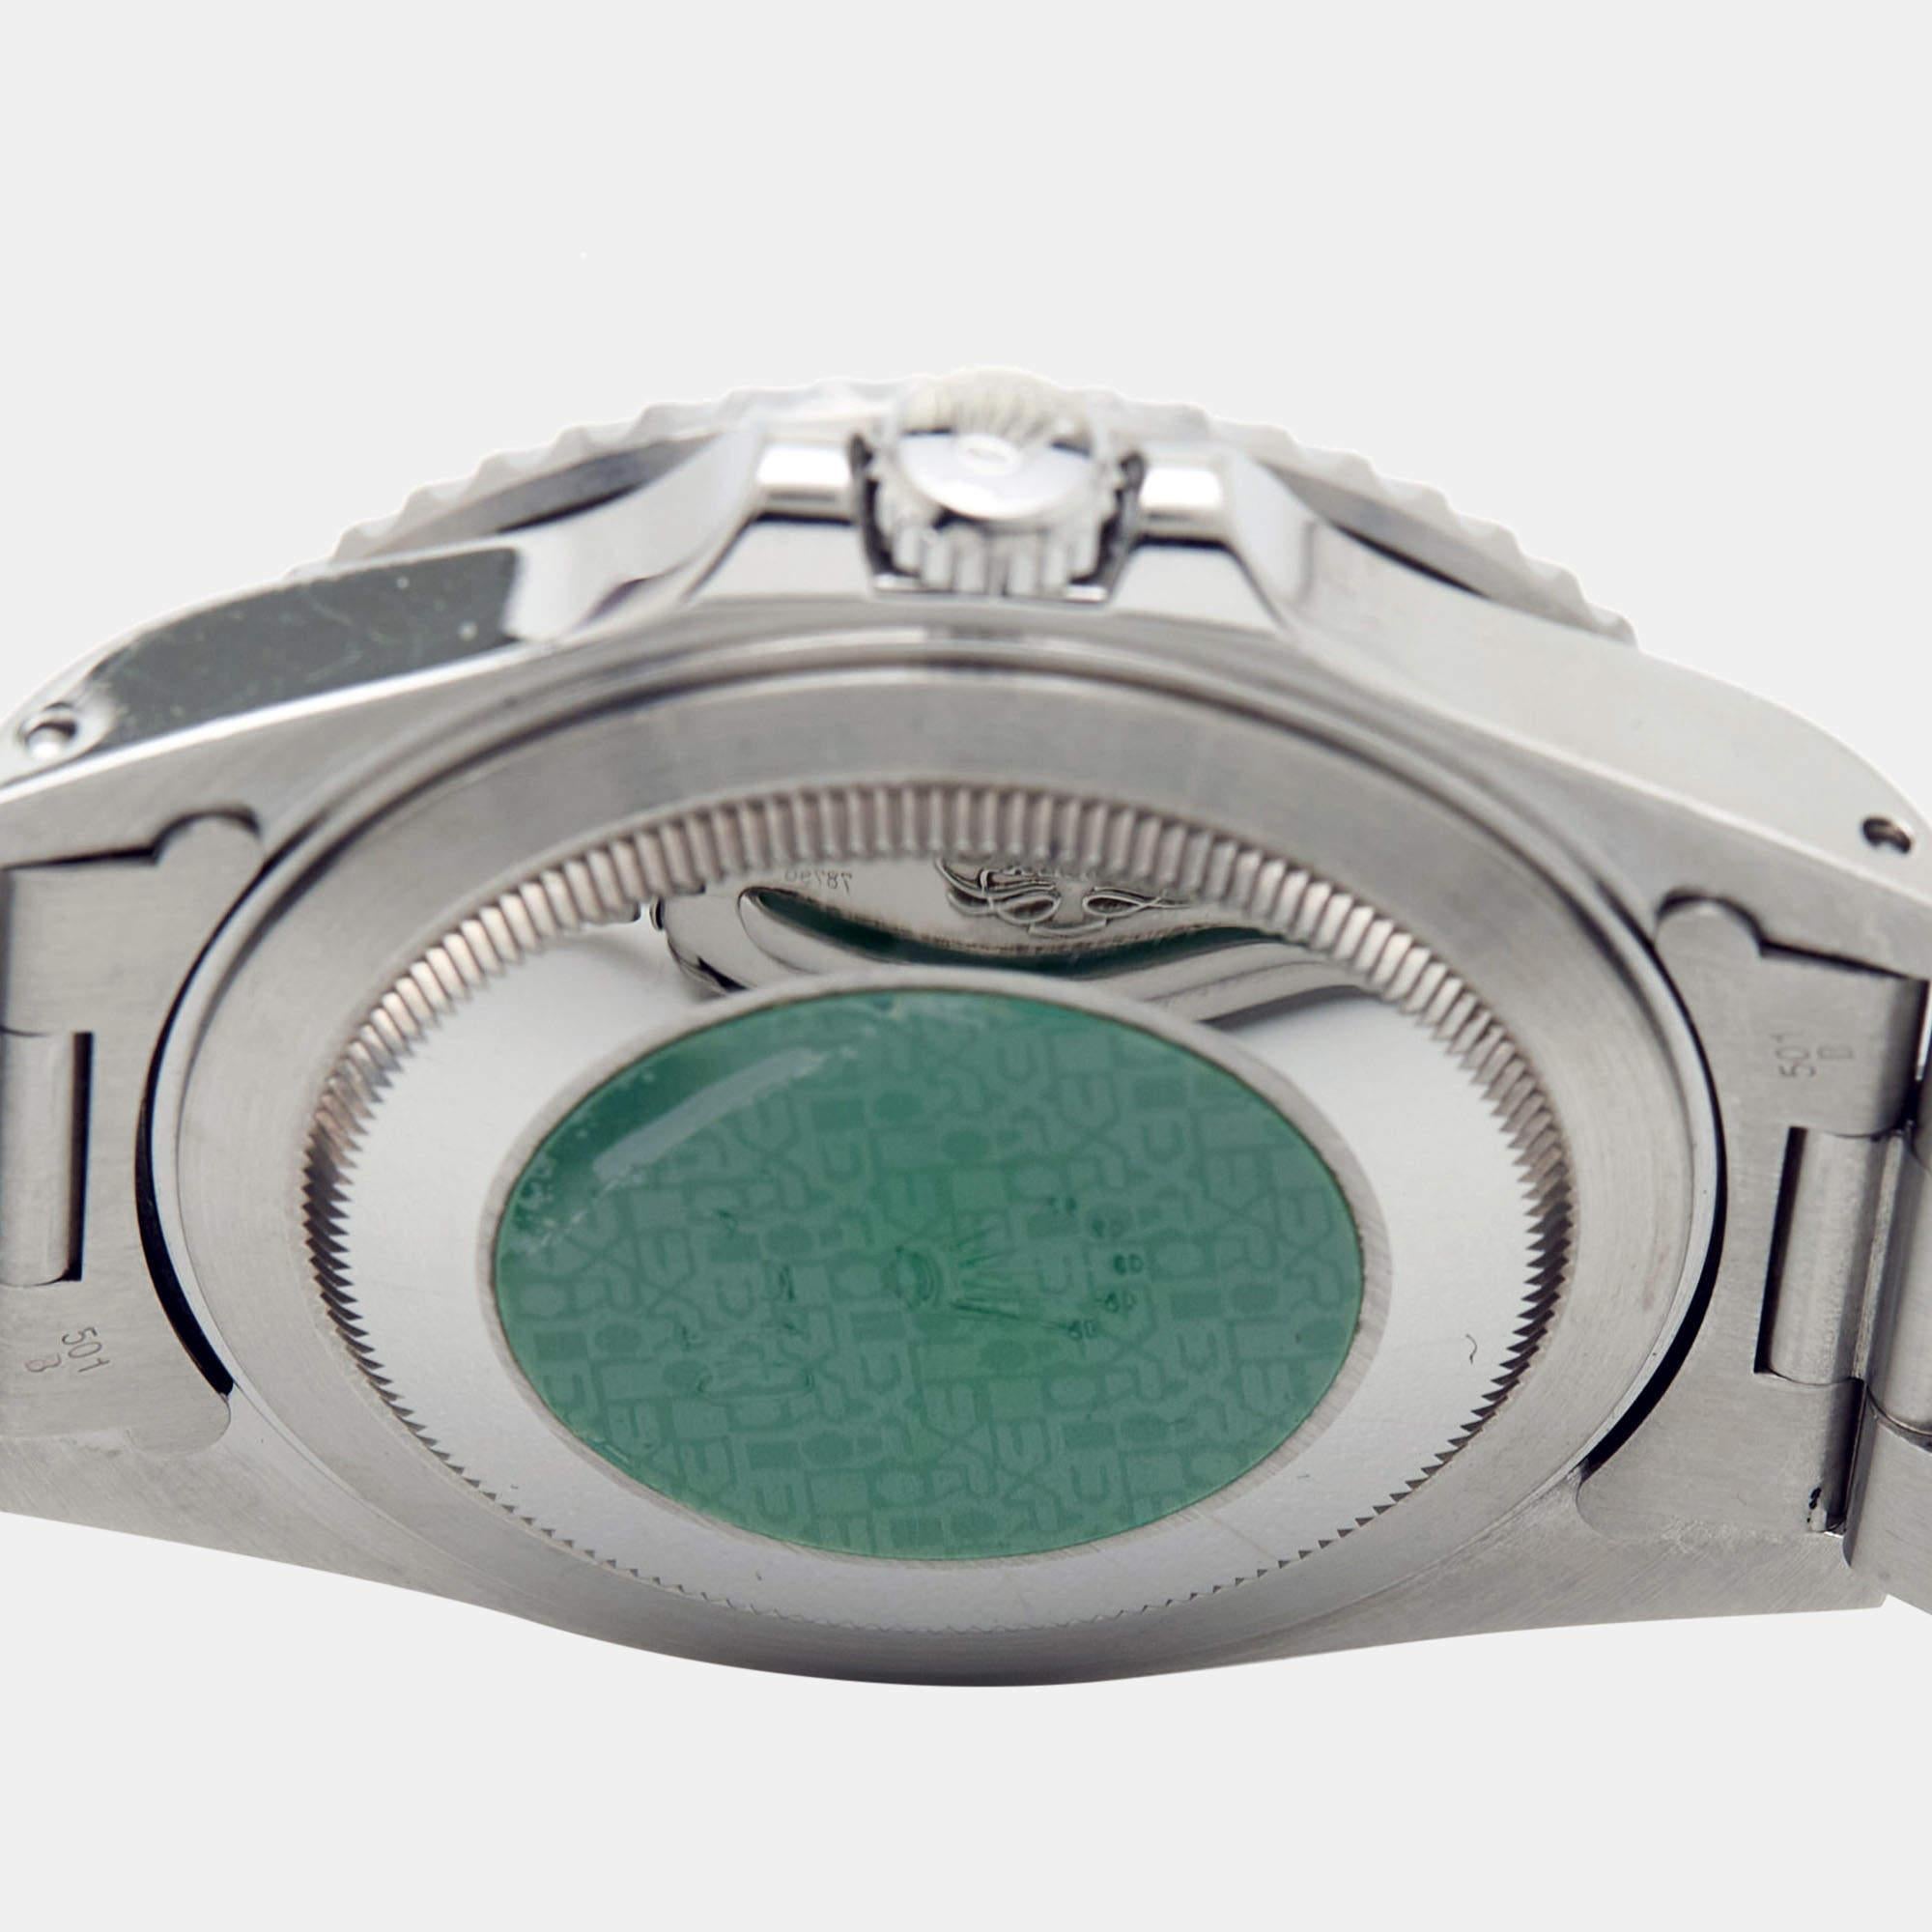 Fabriquée avec savoir-faire en acier inoxydable, cette Rolex GMT-Master II 16710 présente un aspect luxueux et un ajustement fabuleux. Pour les moments du quotidien comme pour les voyages, vous avez la Rolex GMT-Master II comme alliée intemporelle.

